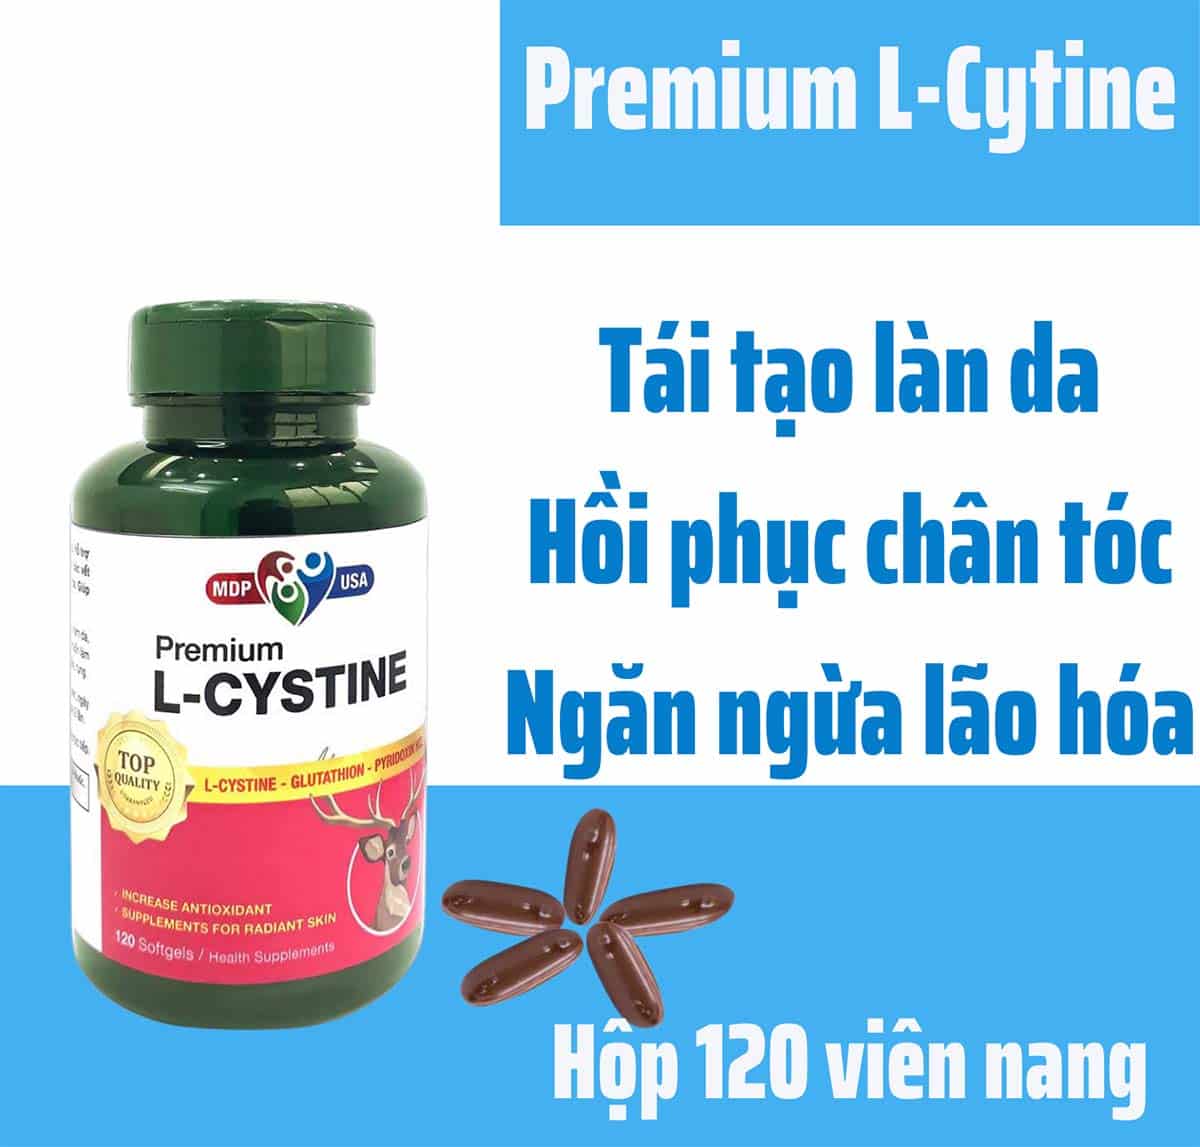 Premium L-Cystine giúp giảm thâm sạm, làm trắng da